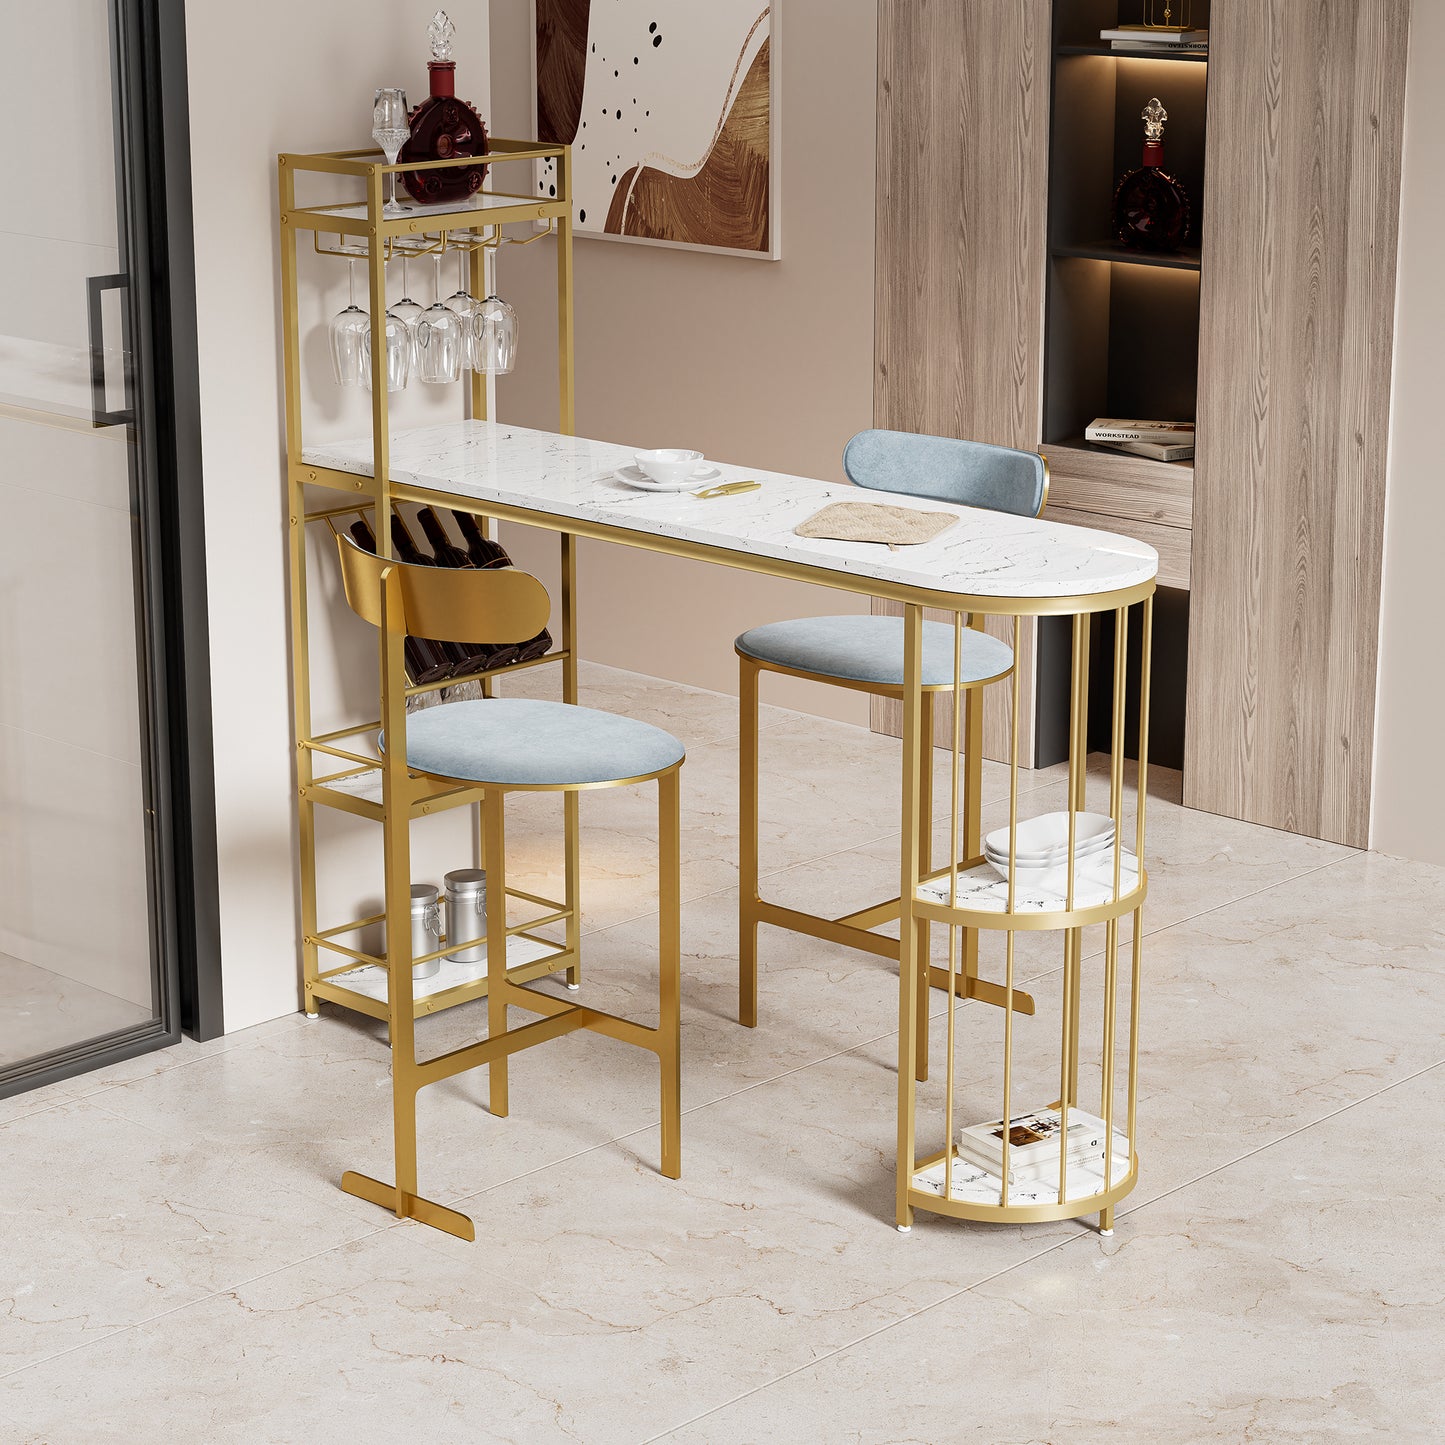 63" Table de salle à manger de hauteur de bar de cuisine blanche moderne Table de petit-déjeuner en bois avec base dorée avec étagères, support en verre, support à bouteilles de vin